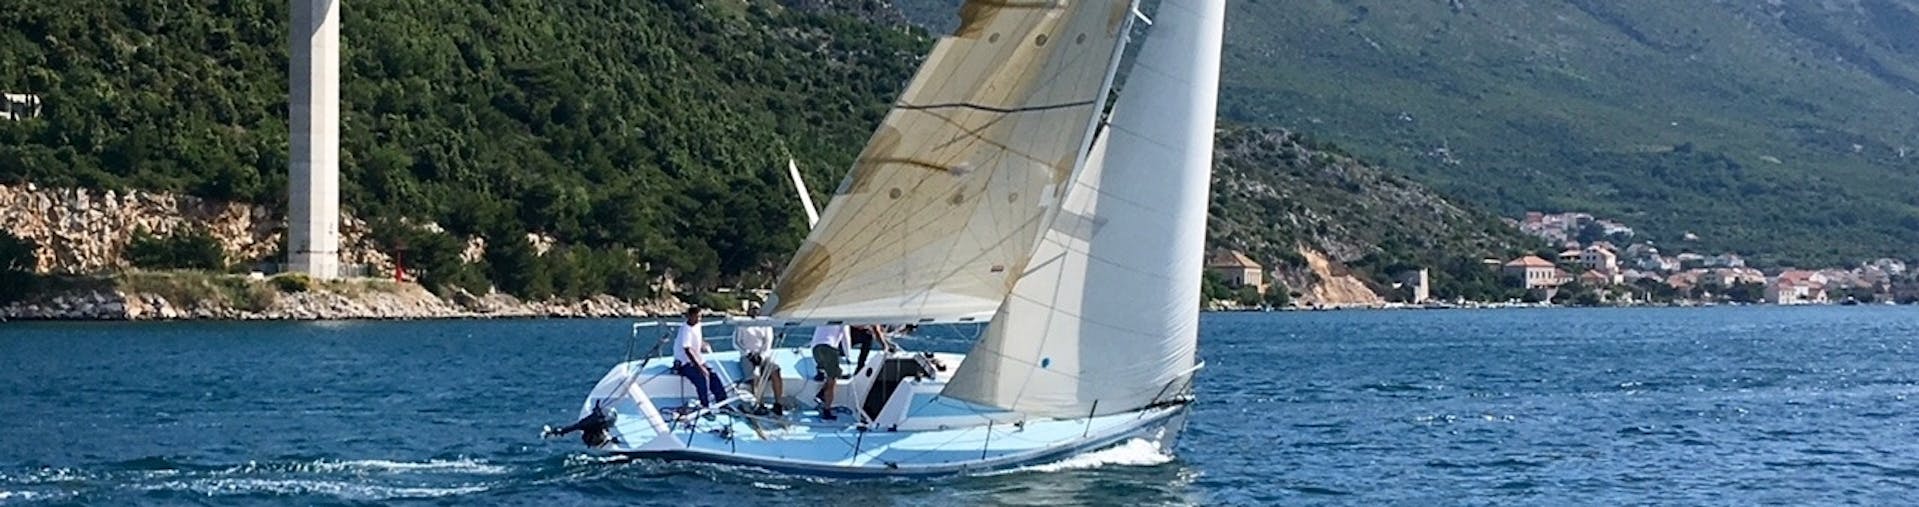 La nostra barca a vela in acqua durante una gita privata intorno alle isole Elafiti da Dubrovnik con The Day Sail Croatia.